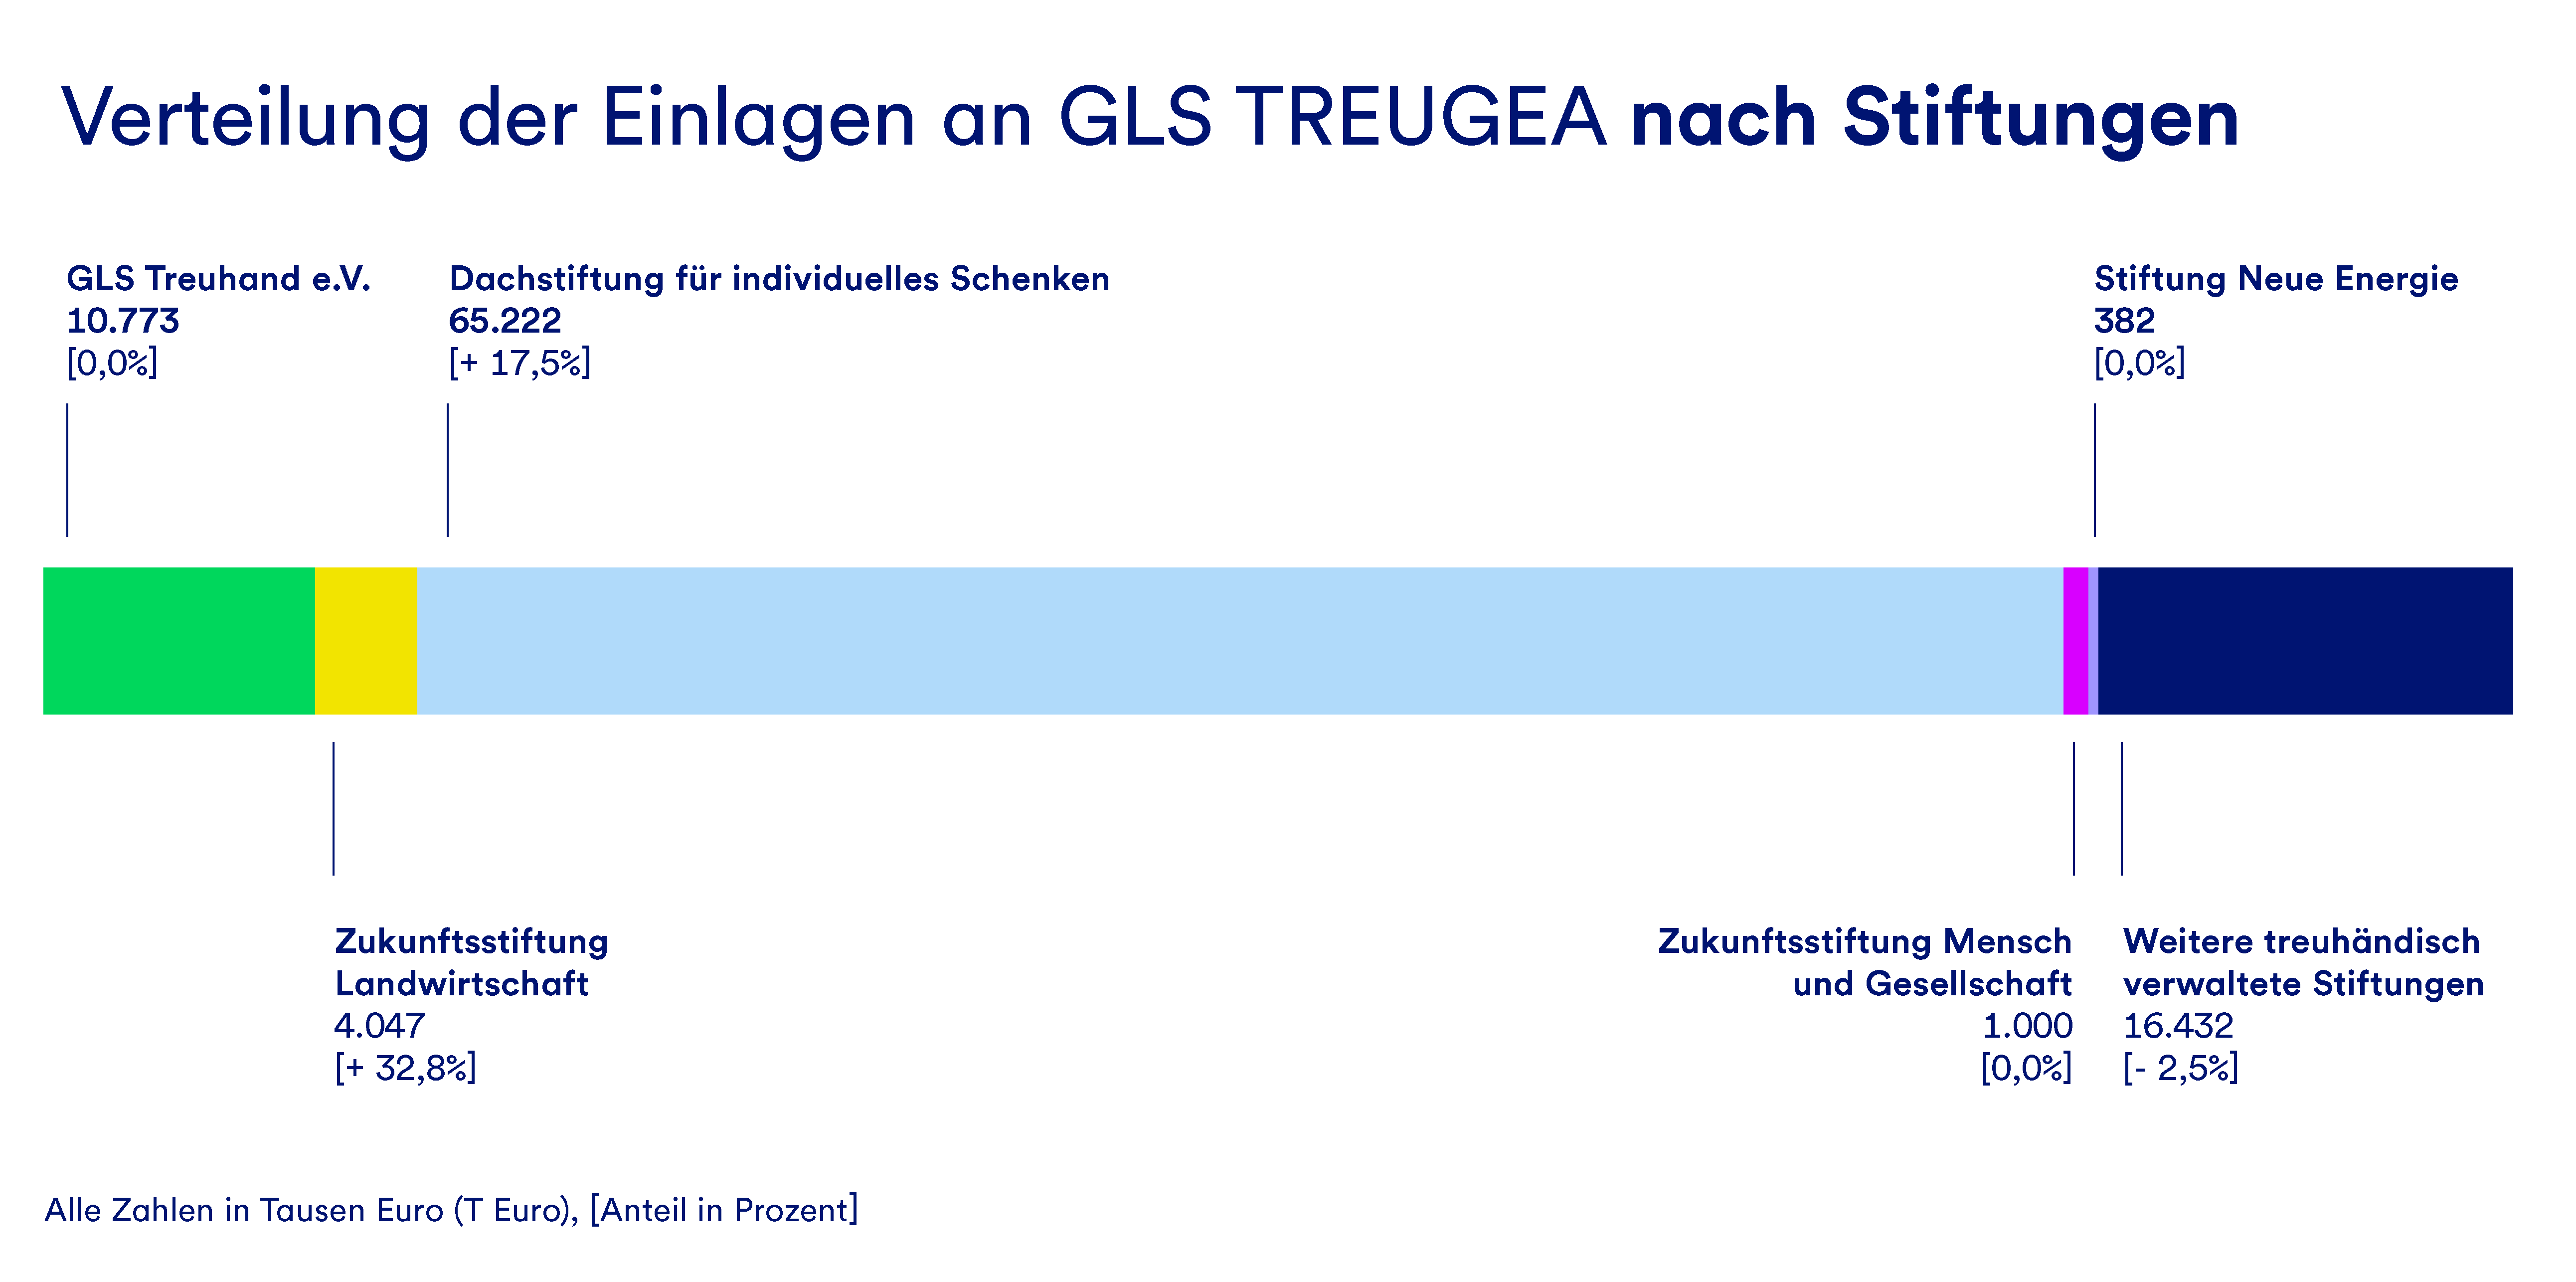 Eine Grafik, die die Verteilung der Einlagen an GLS Treugea nach Stiftung darstellt.